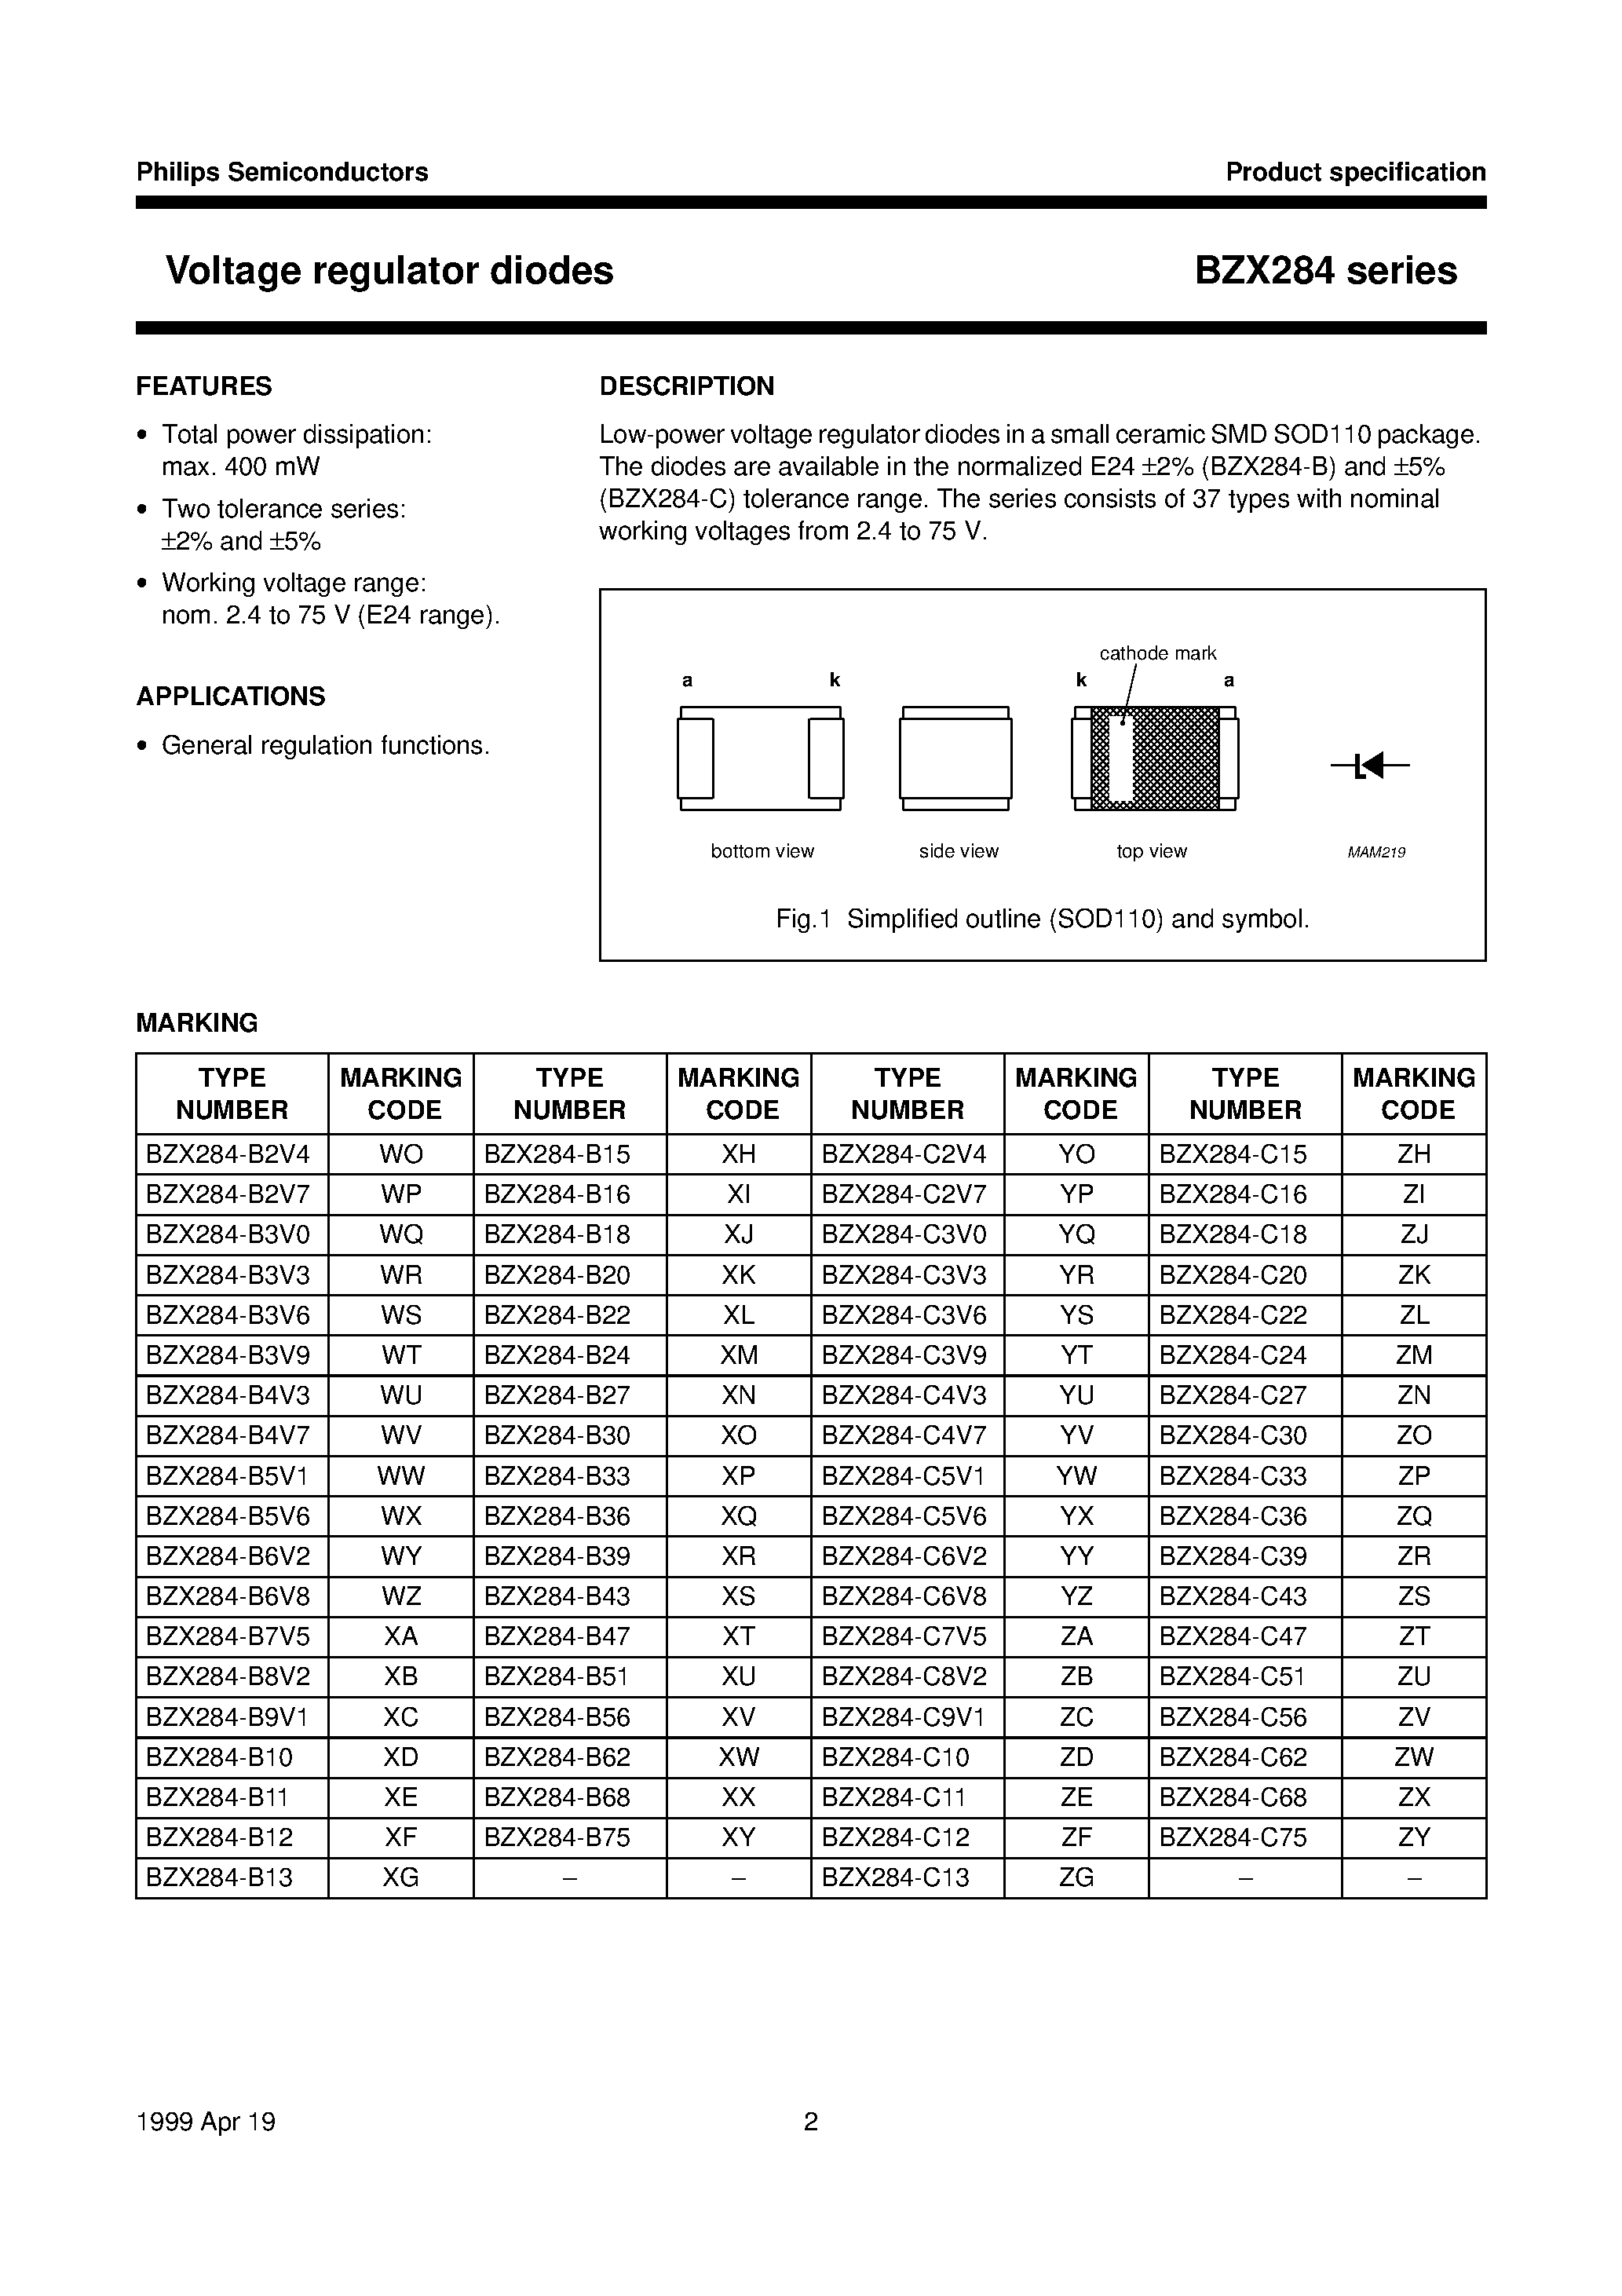 Datasheet BZX284-B27 - Voltage regulator diodes page 2